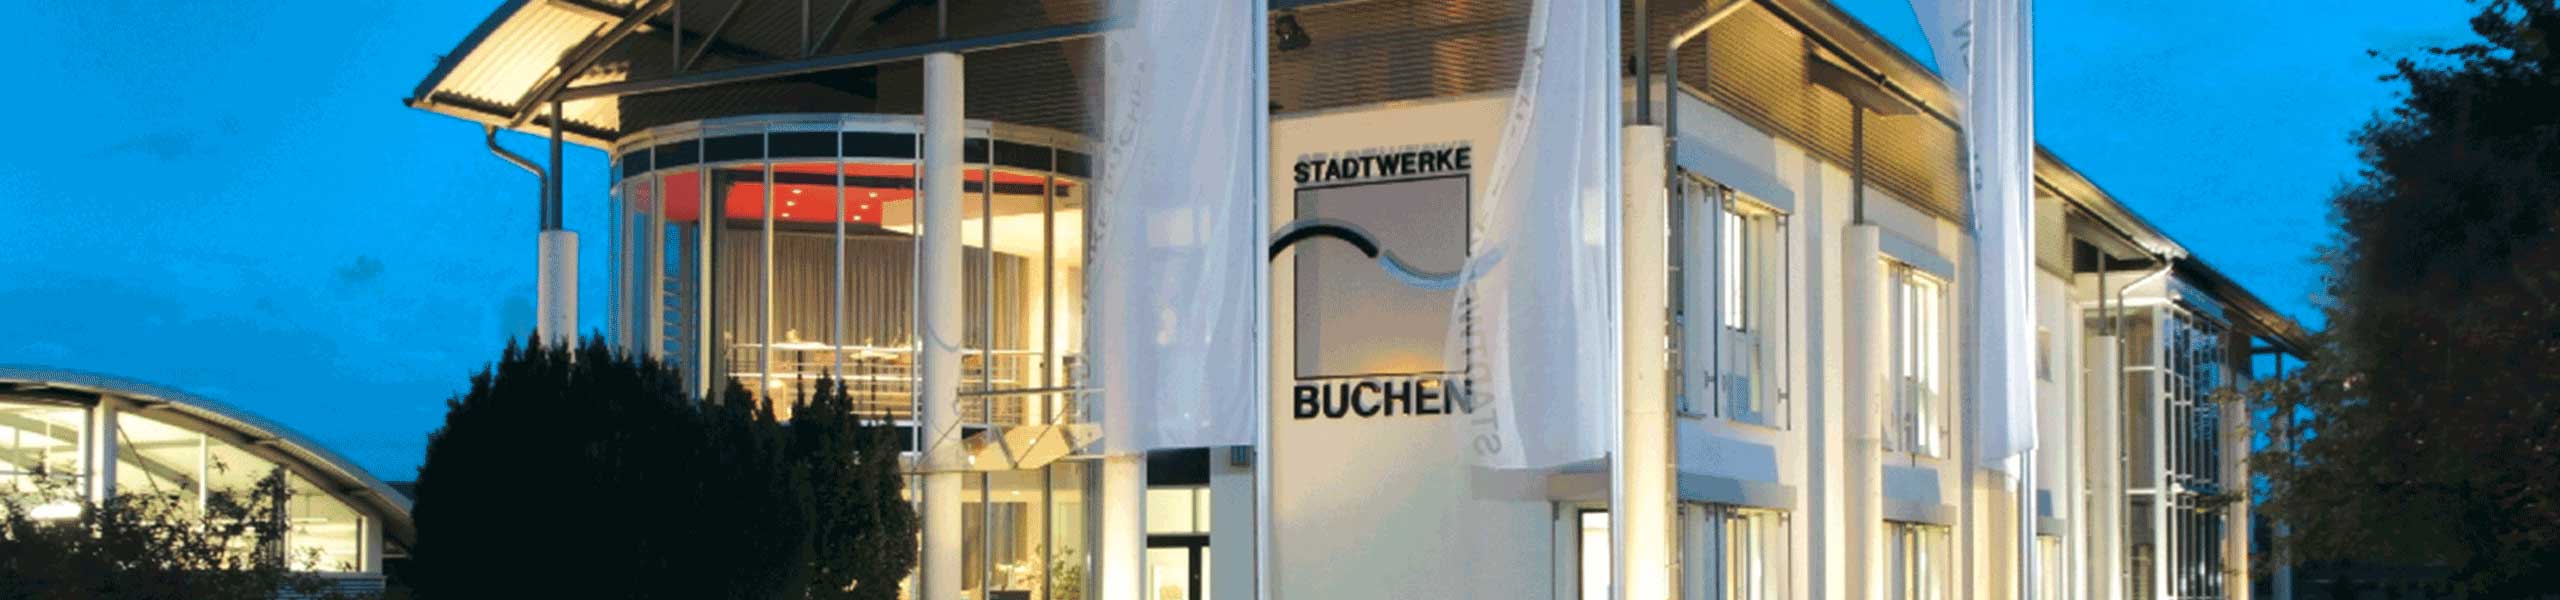 Stadtwerke Buchen GmbH & Co KG - Gasanschluss